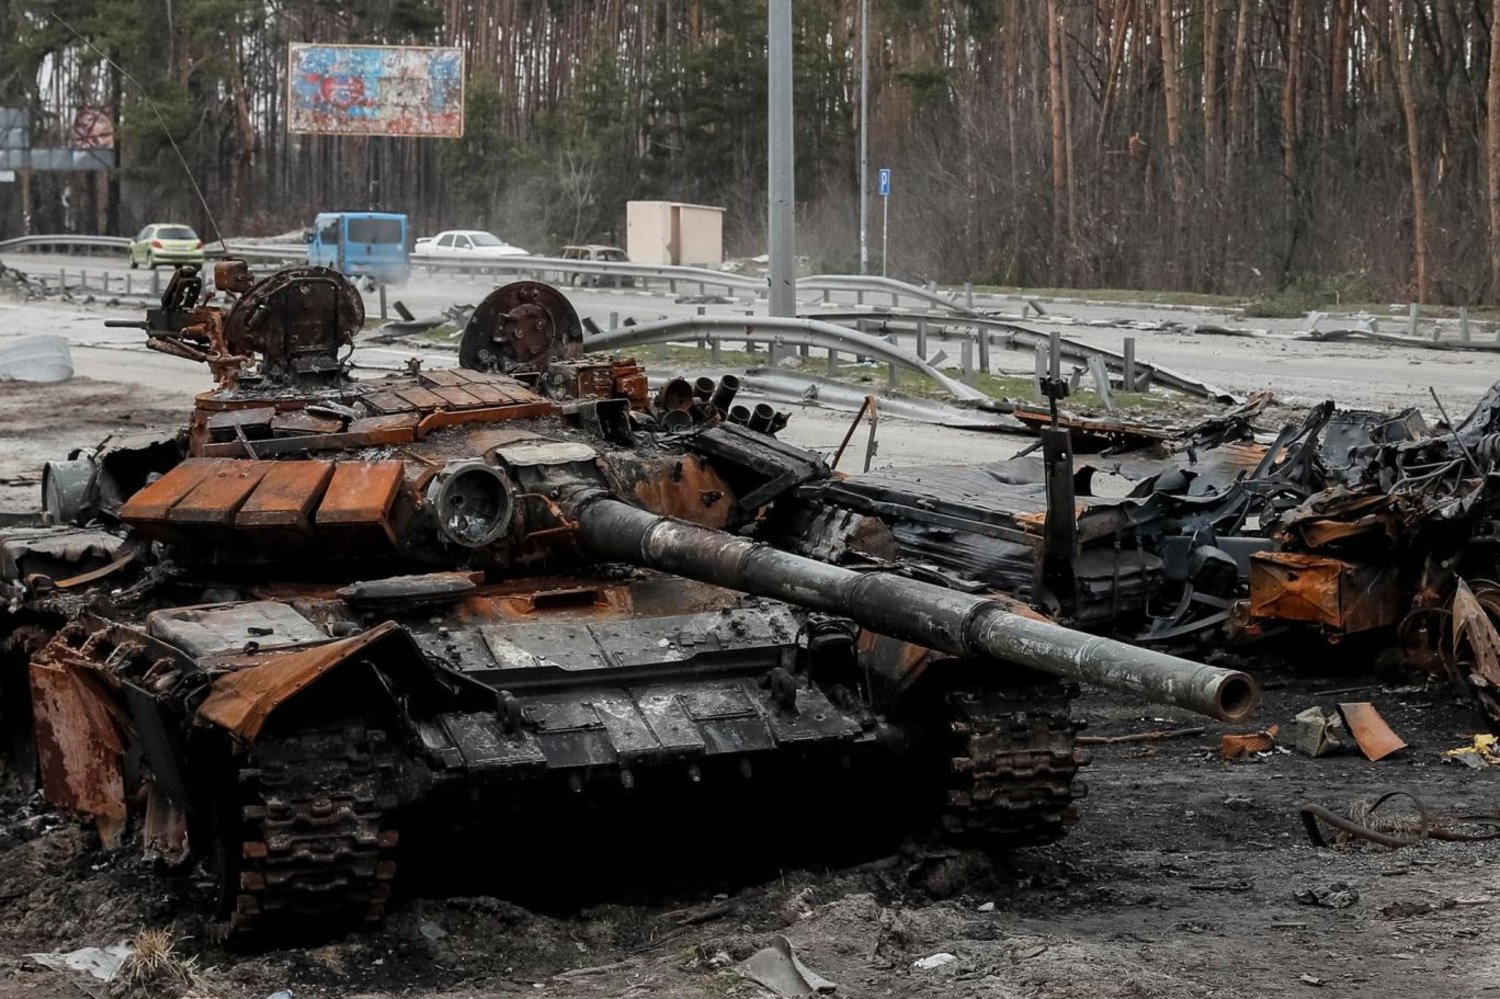 Savaşt Ukrayna ordusu, hava ve kara saldırılarıyla birçok Rus tankını yok etmişti (Reuters)

